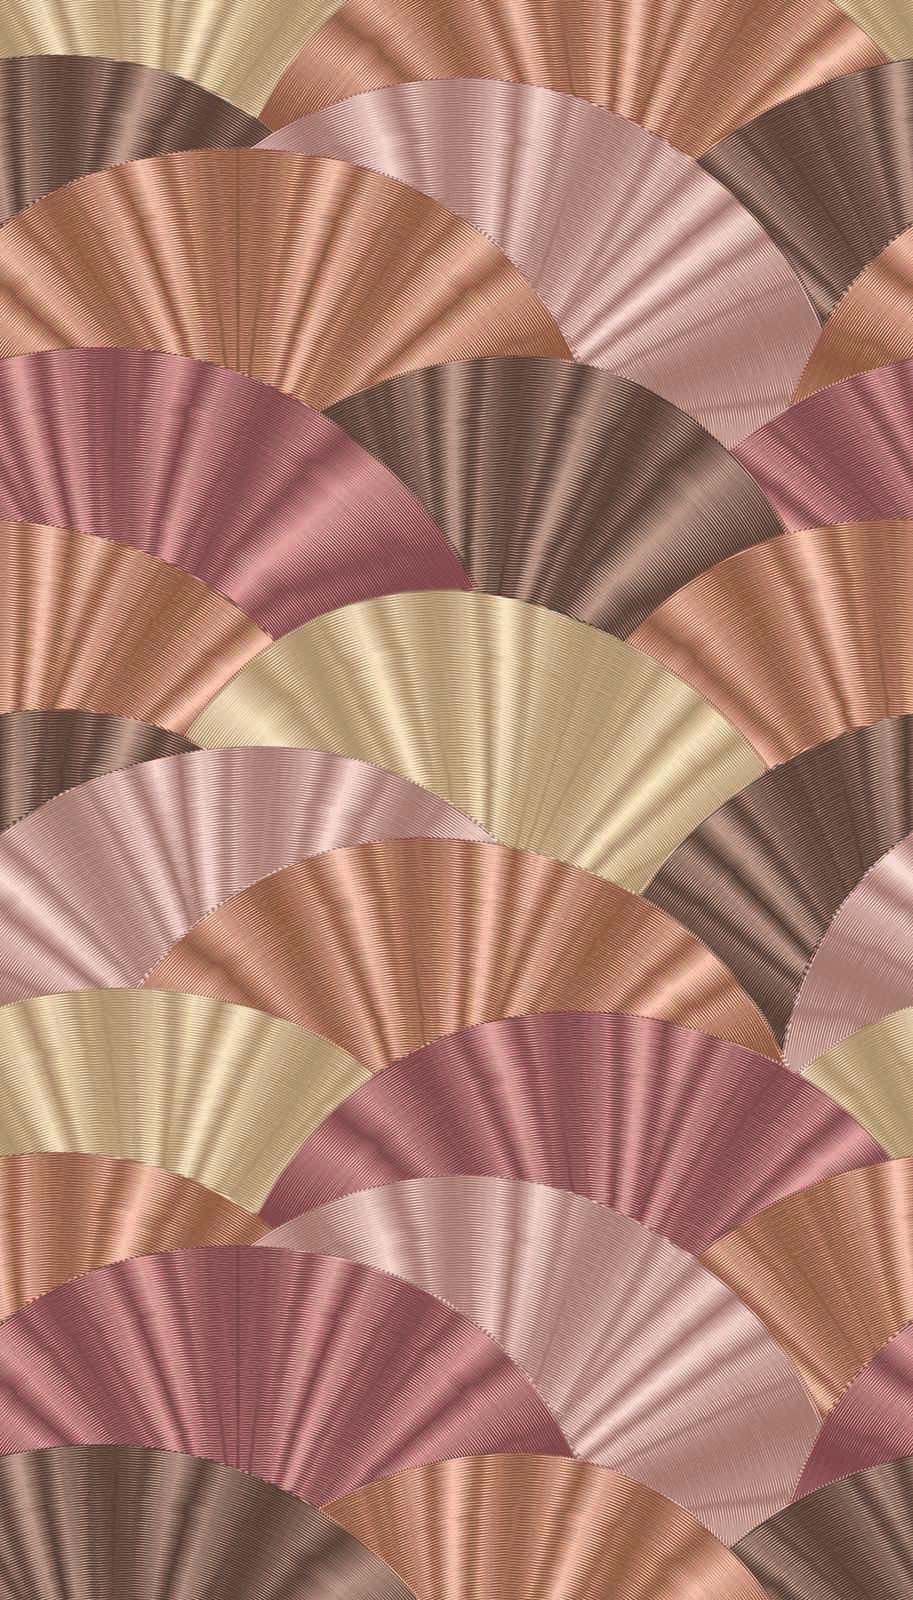             Papel pintado no tejido con motivo de abanico en tonos suaves - rosa, crema, beige
        